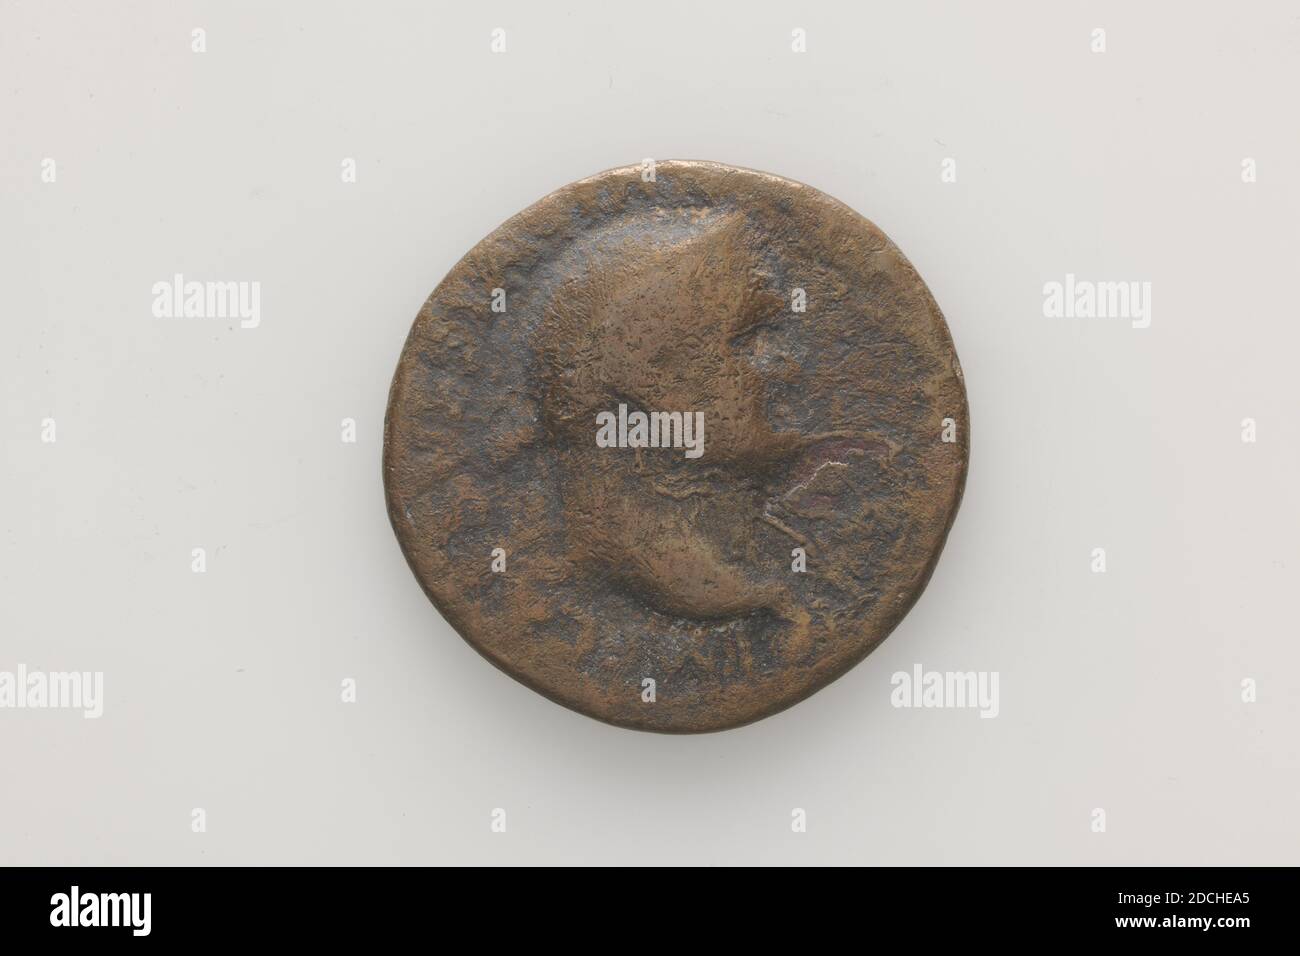 Moneta (mezzo di scambio), Anonimo, circa 72, coniata, Generale: 2.7 x 0.2cm (27 x 2mm), peso: 7.8g, moneta romana di rame dell'Imperatore Vespasiano. Sull'ossetto il busto dell'Imperatore Vespasiano, usato a destra. Con una didascalia illeggibile. Al contrario un'immagine vaga di un Rom seduto con una corona e parazonio, busto, mitologia Foto Stock